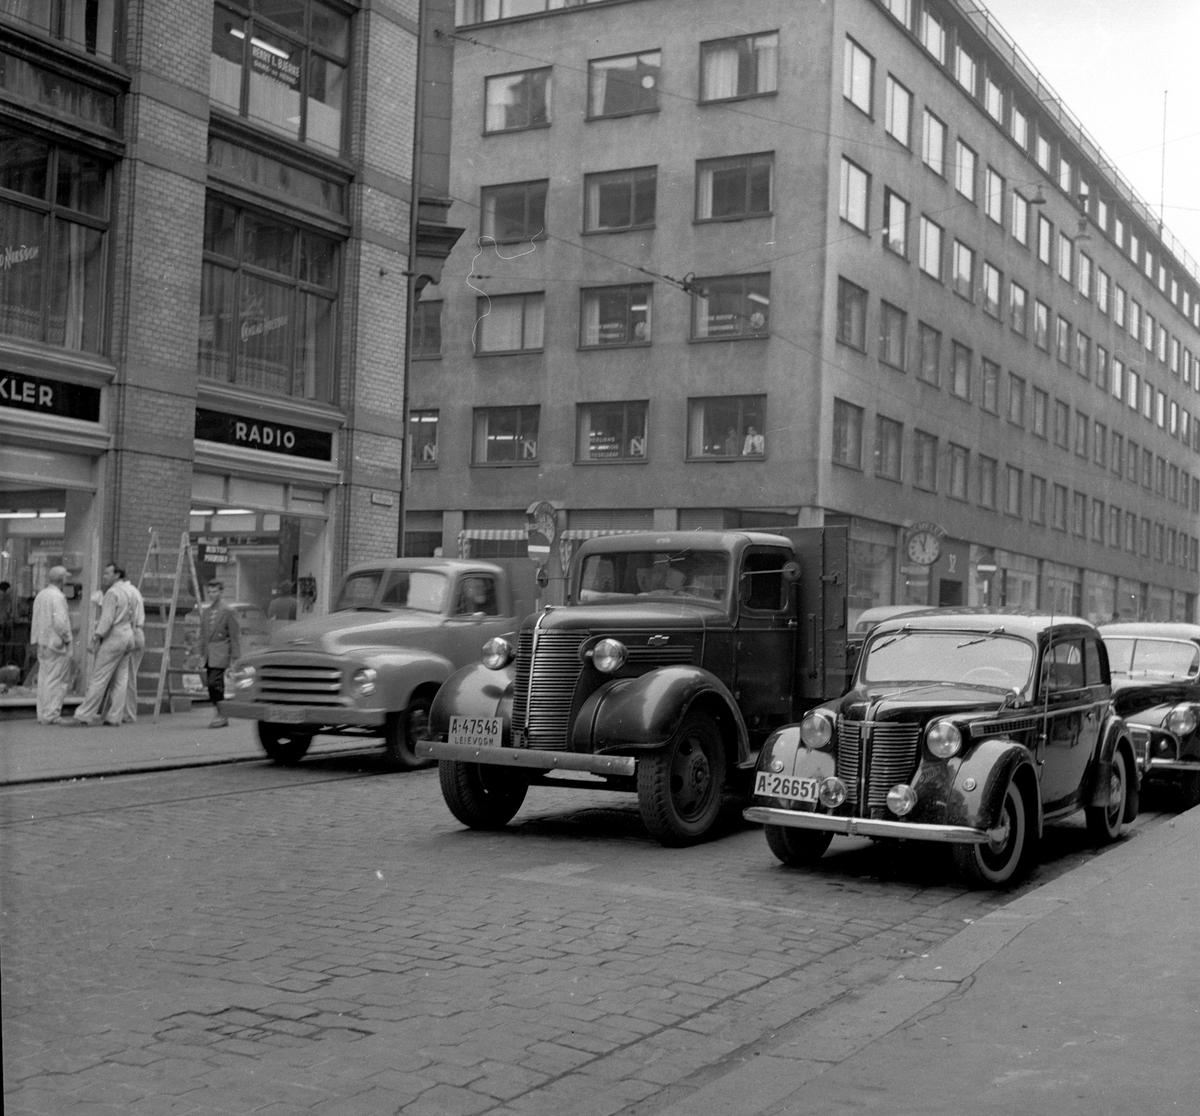 Fra venstre bil av typen Opel Blitz 1952-58, Chevrolet lastebil 1938 og Opel Olympia 1938-39. Trolig Morris Minor bak den.